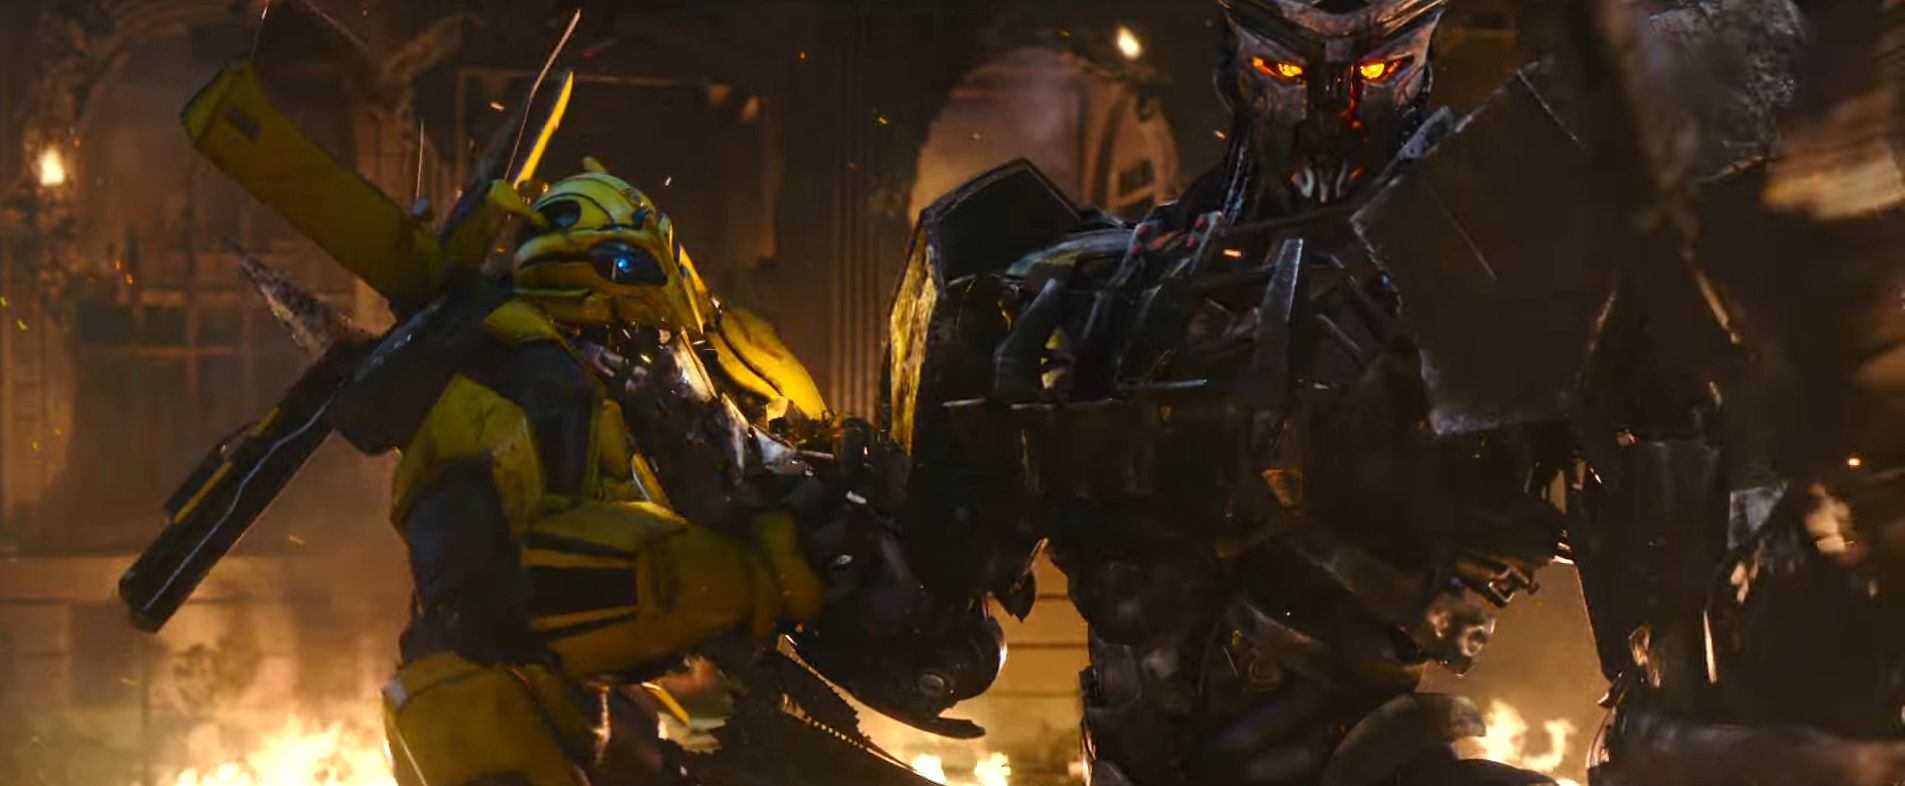 Nghẹt thở với đại chiến robot quái vật khổng lồ trong trailer Transformers: Rise of the Beasts - Ảnh 9.